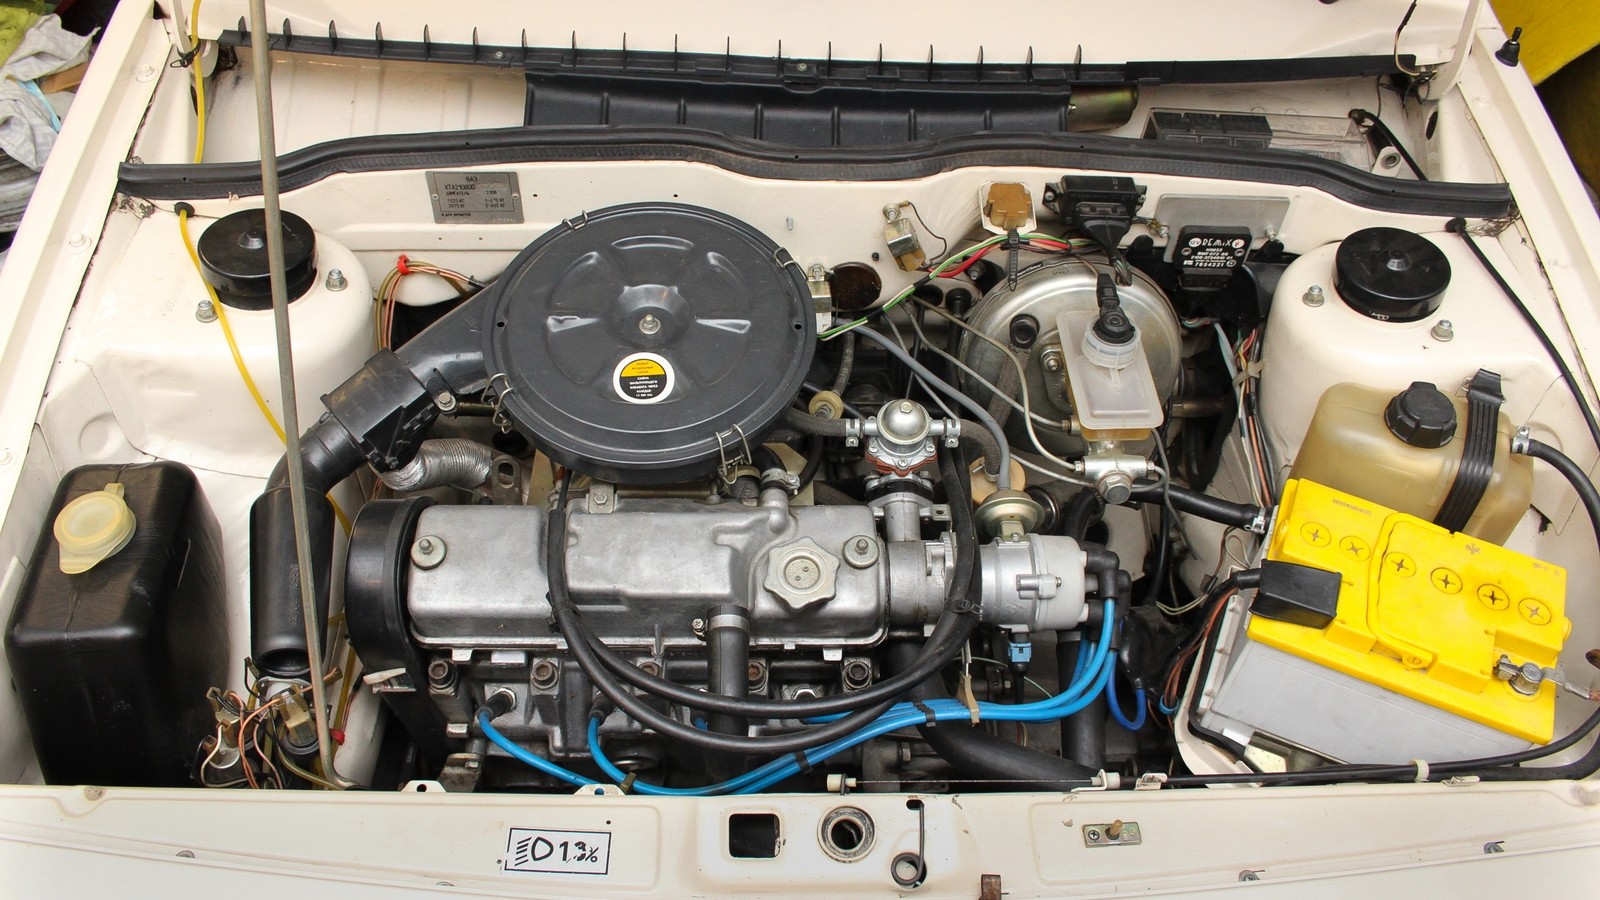 1300-кубовый двигатель славился своим «боевым» характером. Черный непрозрачный бачок омывателя на серийных ВАЗ-2108 практически не встречался.